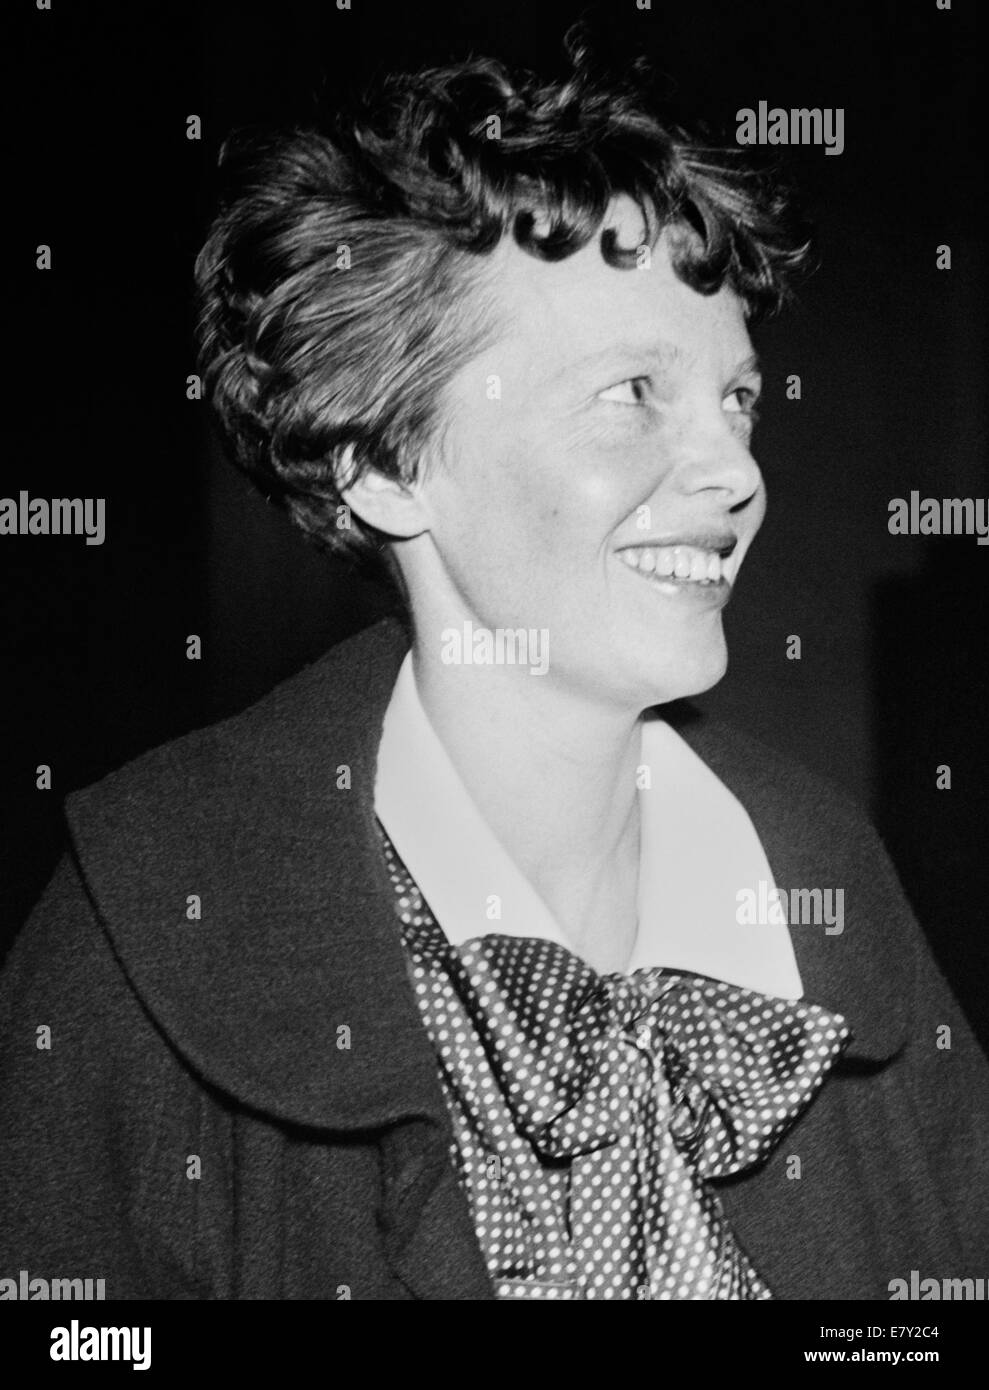 Photo d'époque de la pionnière et auteure de l'aviation américaine Amelia Earhart (1897 – déclarée morte en 1939) – Earhart et son navigateur Fred Noonan ont connu une célèbre disparition en 1937 alors qu'elle essayait de devenir la première femme à effectuer un vol de navigation du globe. Photo prise en 1936. Banque D'Images